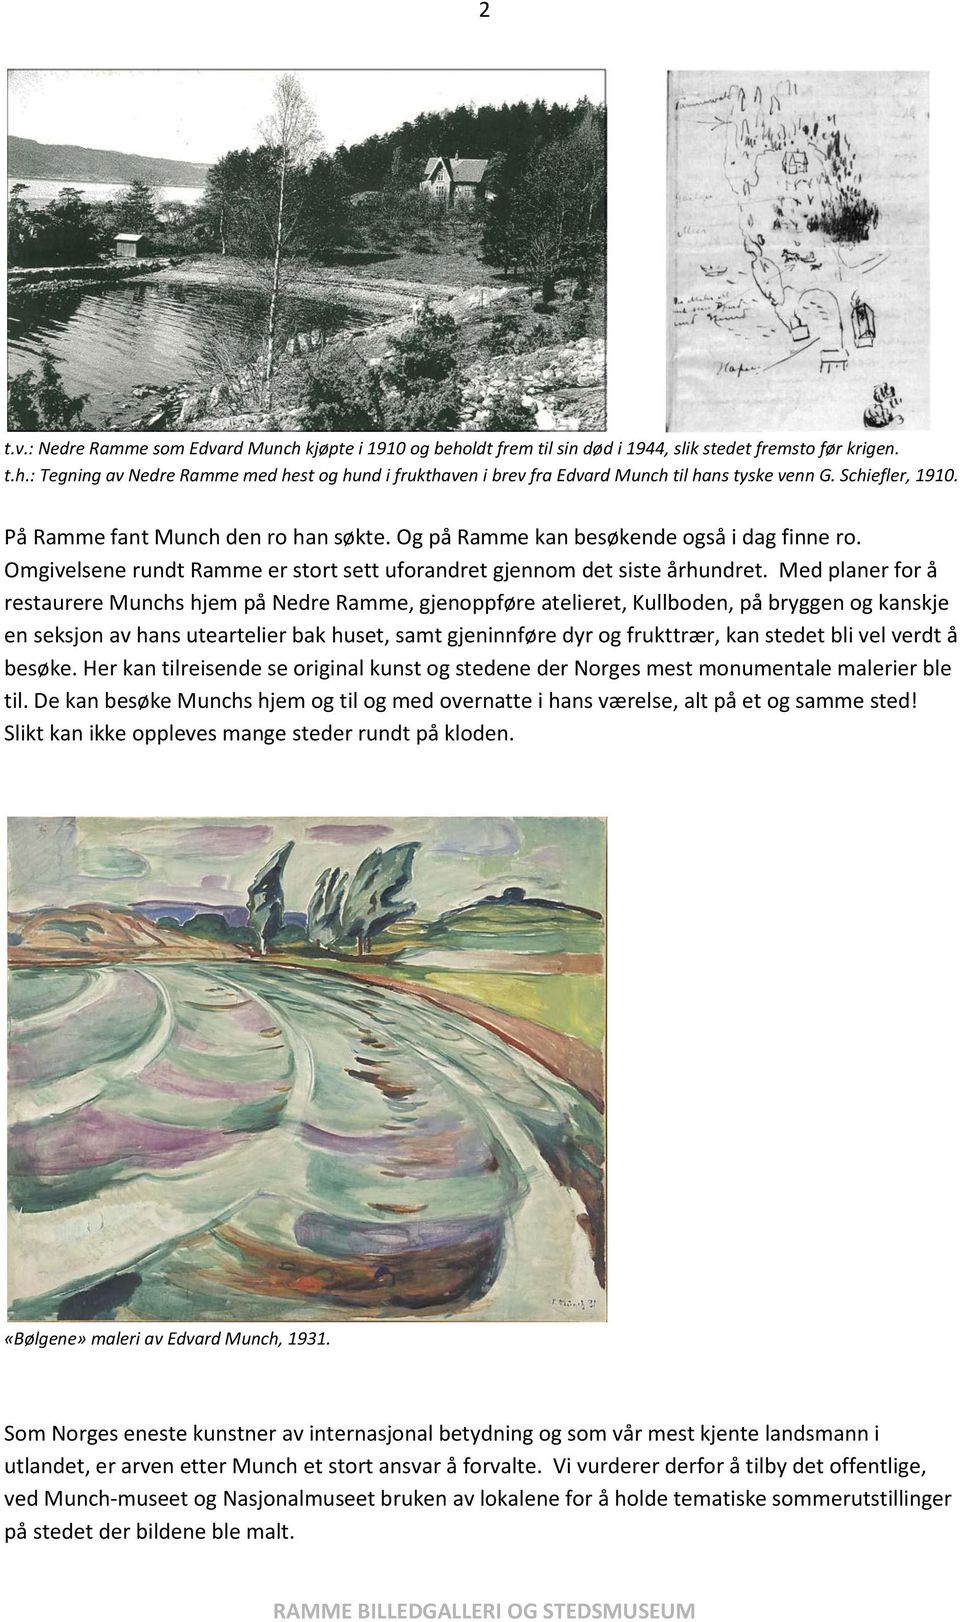 Med planer for å restaurere Munchs hjem på Nedre Ramme, gjenoppføre atelieret, Kullboden, på bryggen og kanskje en seksjon av hans uteartelier bak huset, samt gjeninnføre dyr og frukttrær, kan stedet